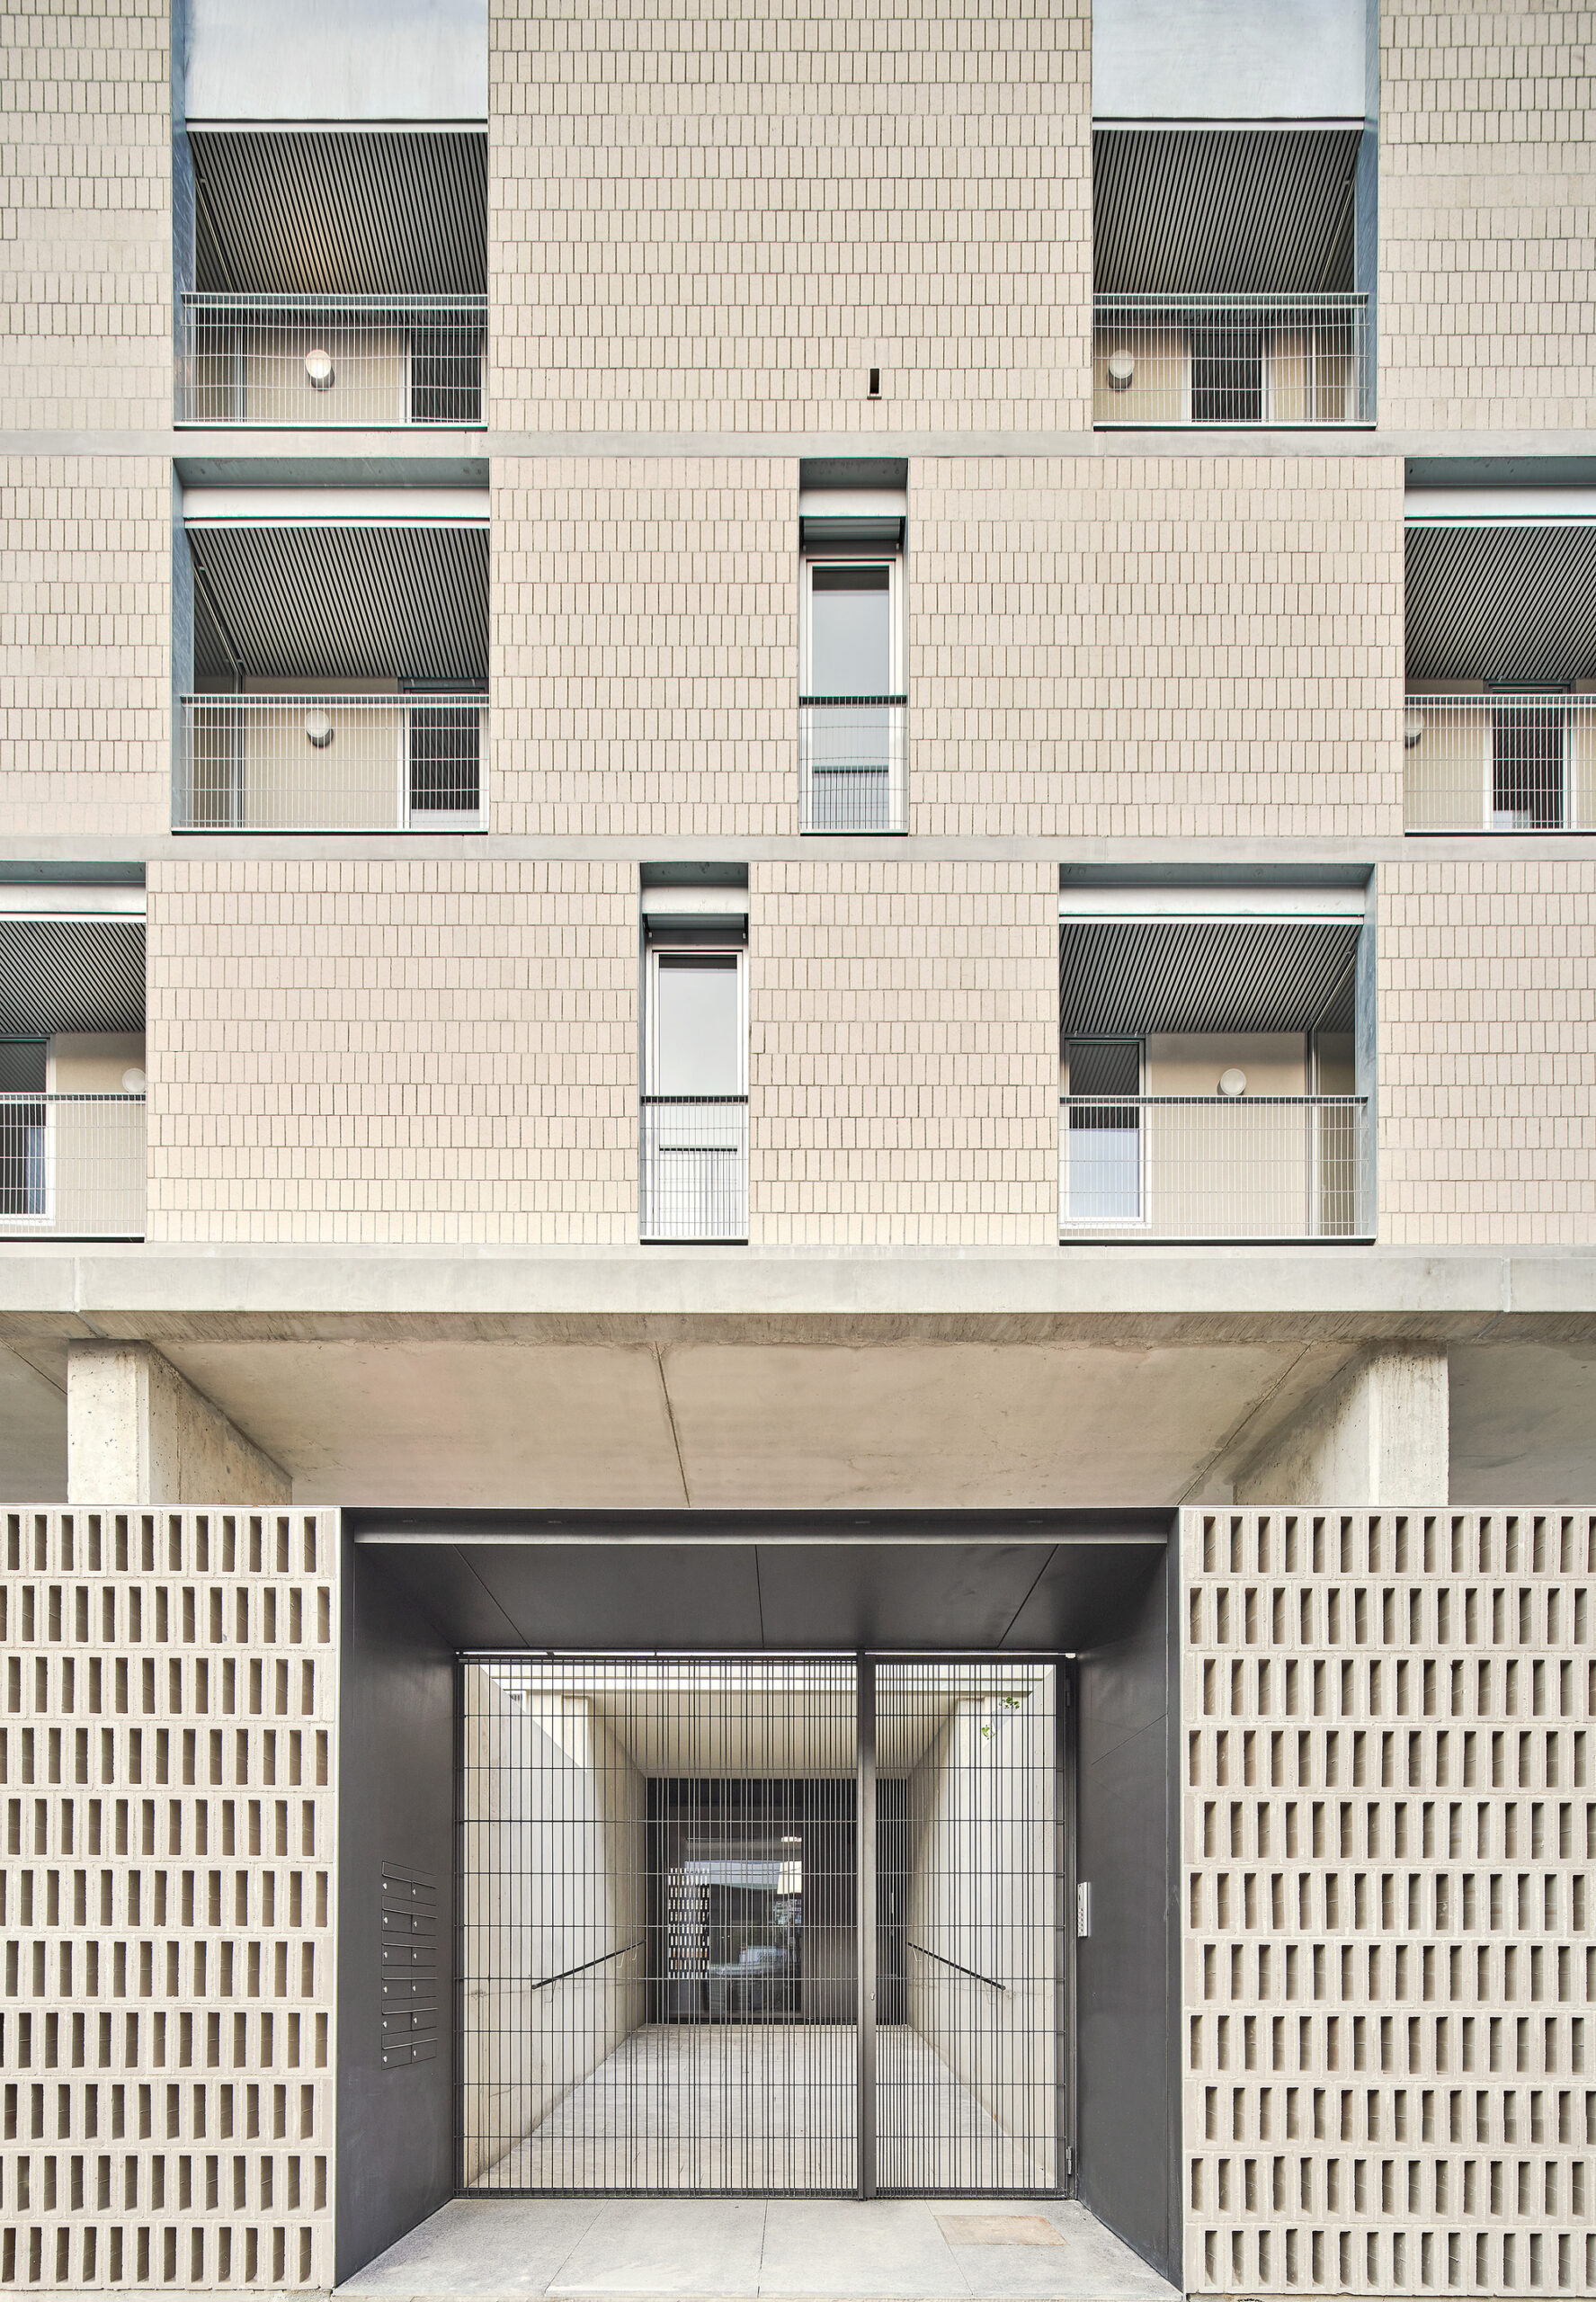 54 Viviendas Sociales en Bon Pastor, un proyecto llevado a cabo por el estudio Peris+Toral Arquitectes y Jaime Pastor en Barcelona. Detalle de fachada y acceso imagen vertical